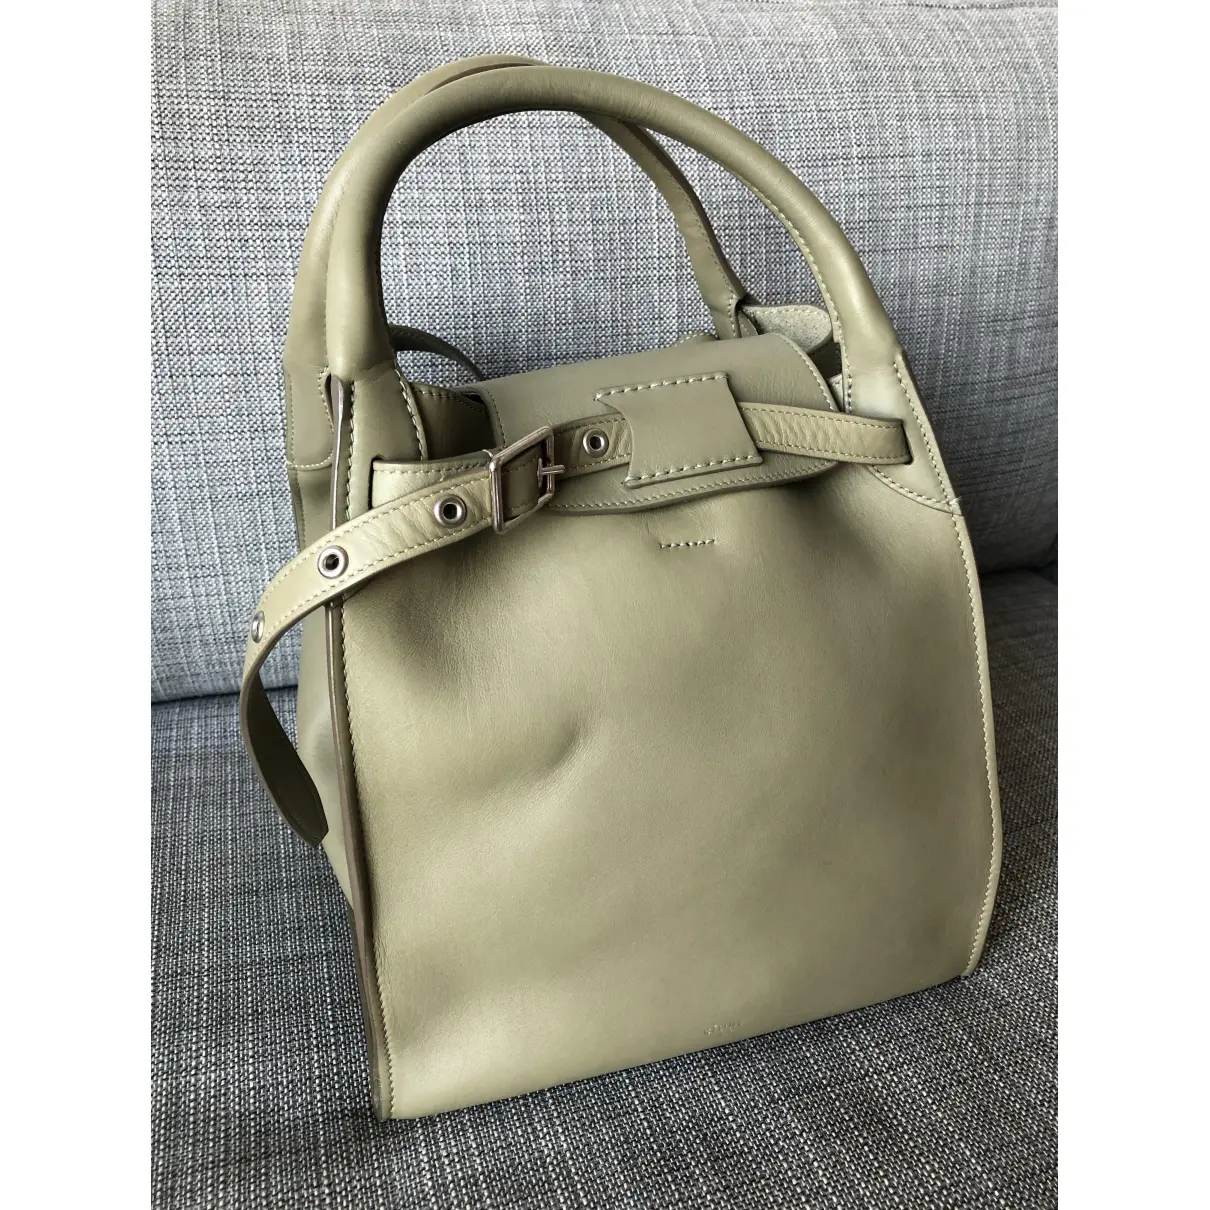 Buy Celine Big Bag leather tote online